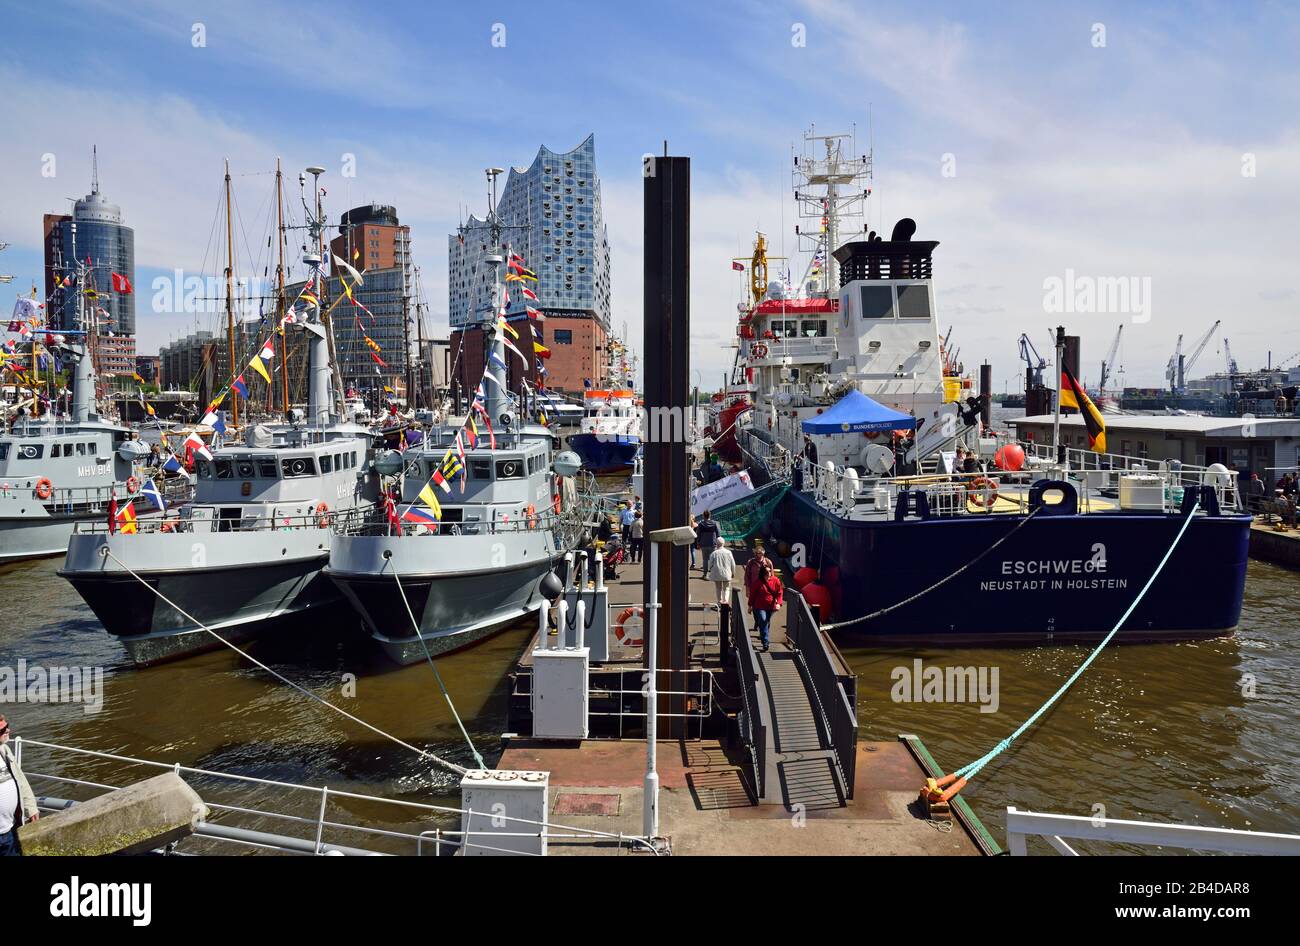 Europa, Alemania, Ciudad hanseática de Hamburgo, Baumwall, Elbe, puerto deportivo, Elbphilharmonie, HafenCity, Fleet Visit, Foto de stock